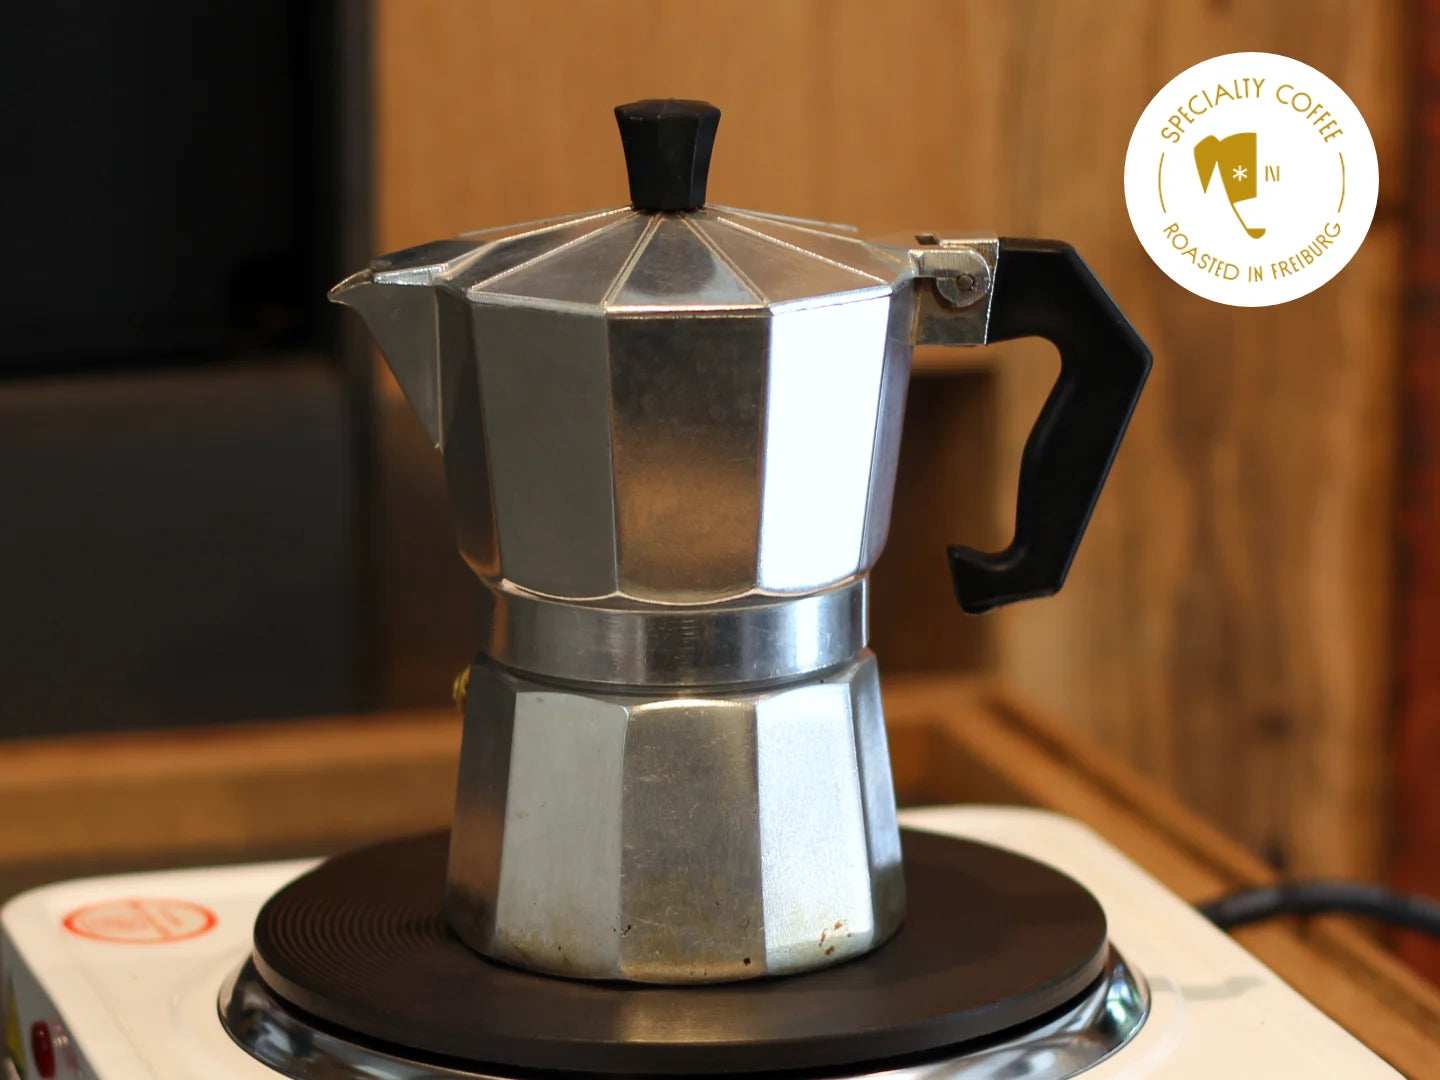 Titelbild zum Artikel über die Kaffeezubereitung mit dem Espressokocher. Zu sehen ist ein typischer achteckiger Espressokocher aus Aluminium auf einer Herdplatte.